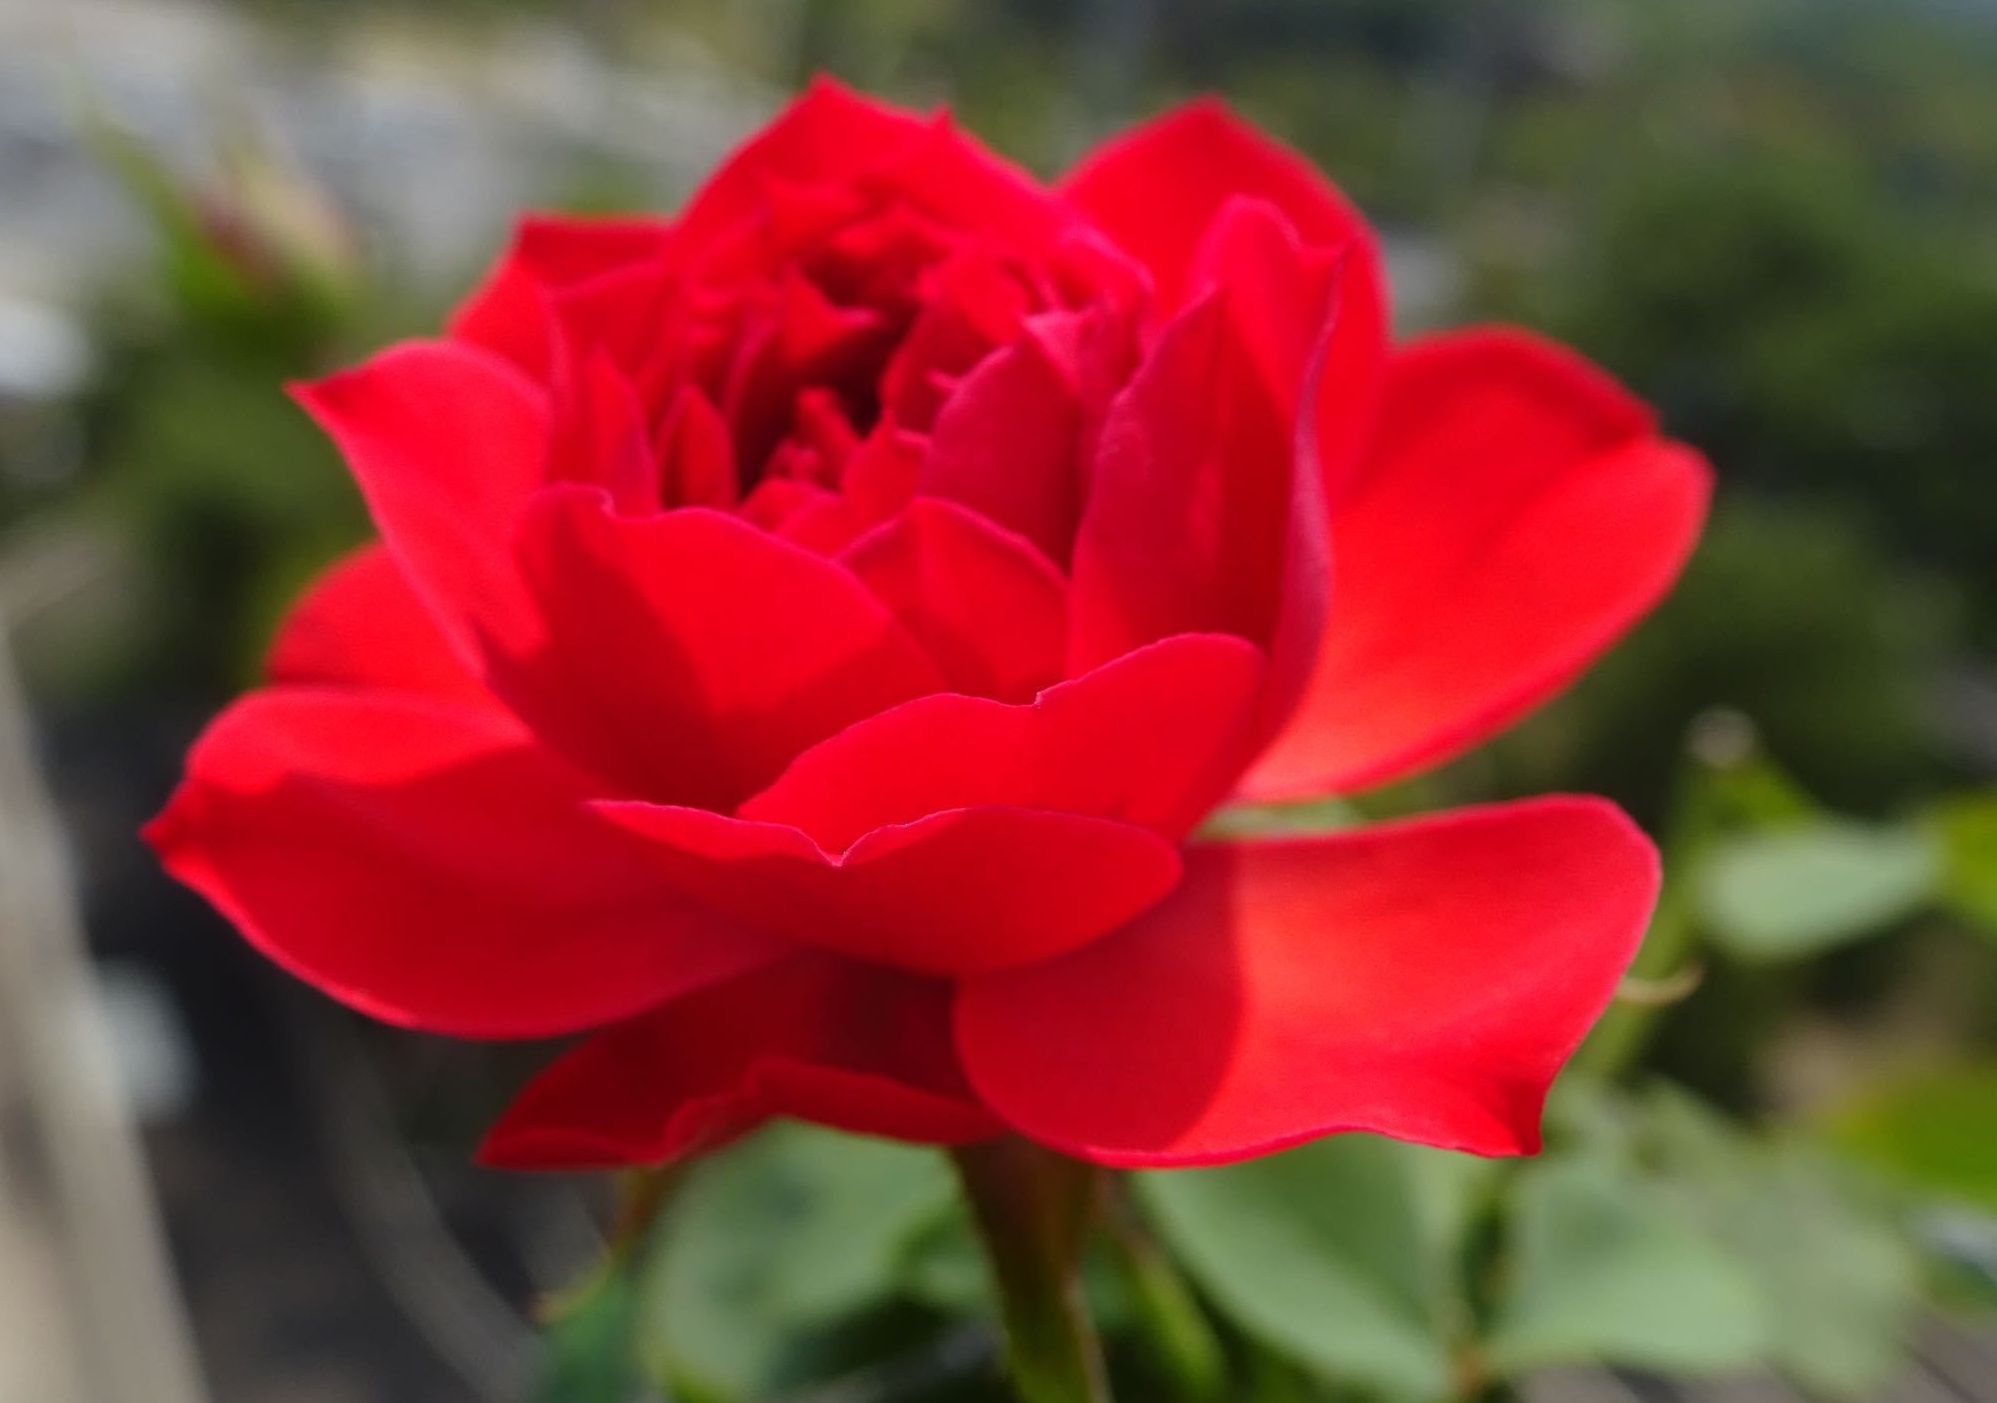 阳台养花,养棵"红苹果"—大红色花朵,美丽又喜庆!